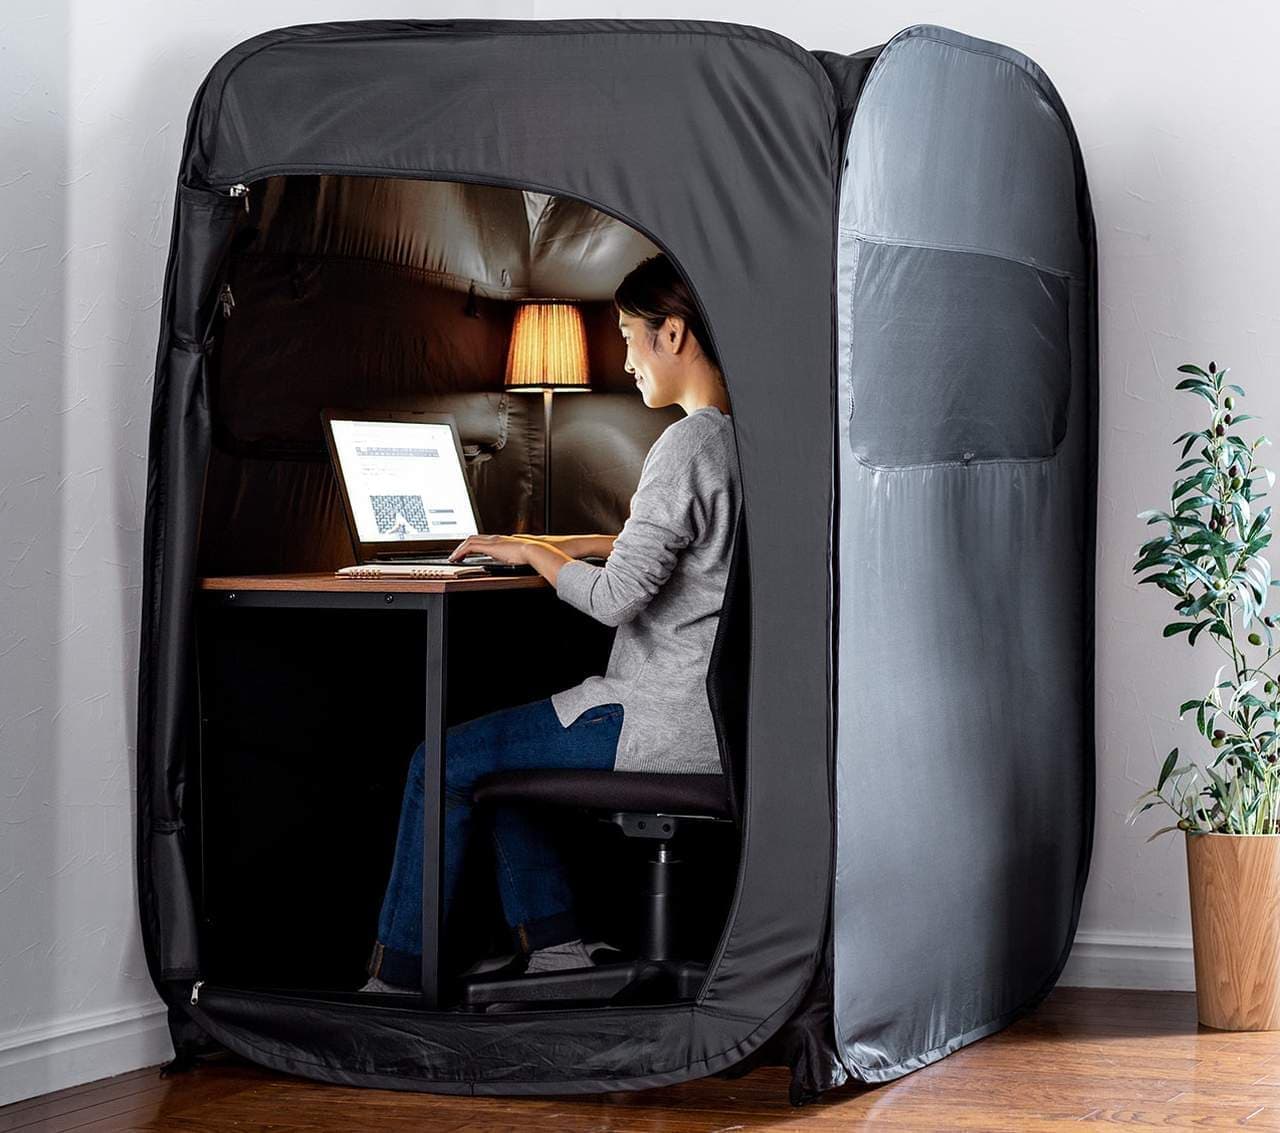 【テレワークに】自宅でぼっちになれるテント「プライバシーテント」